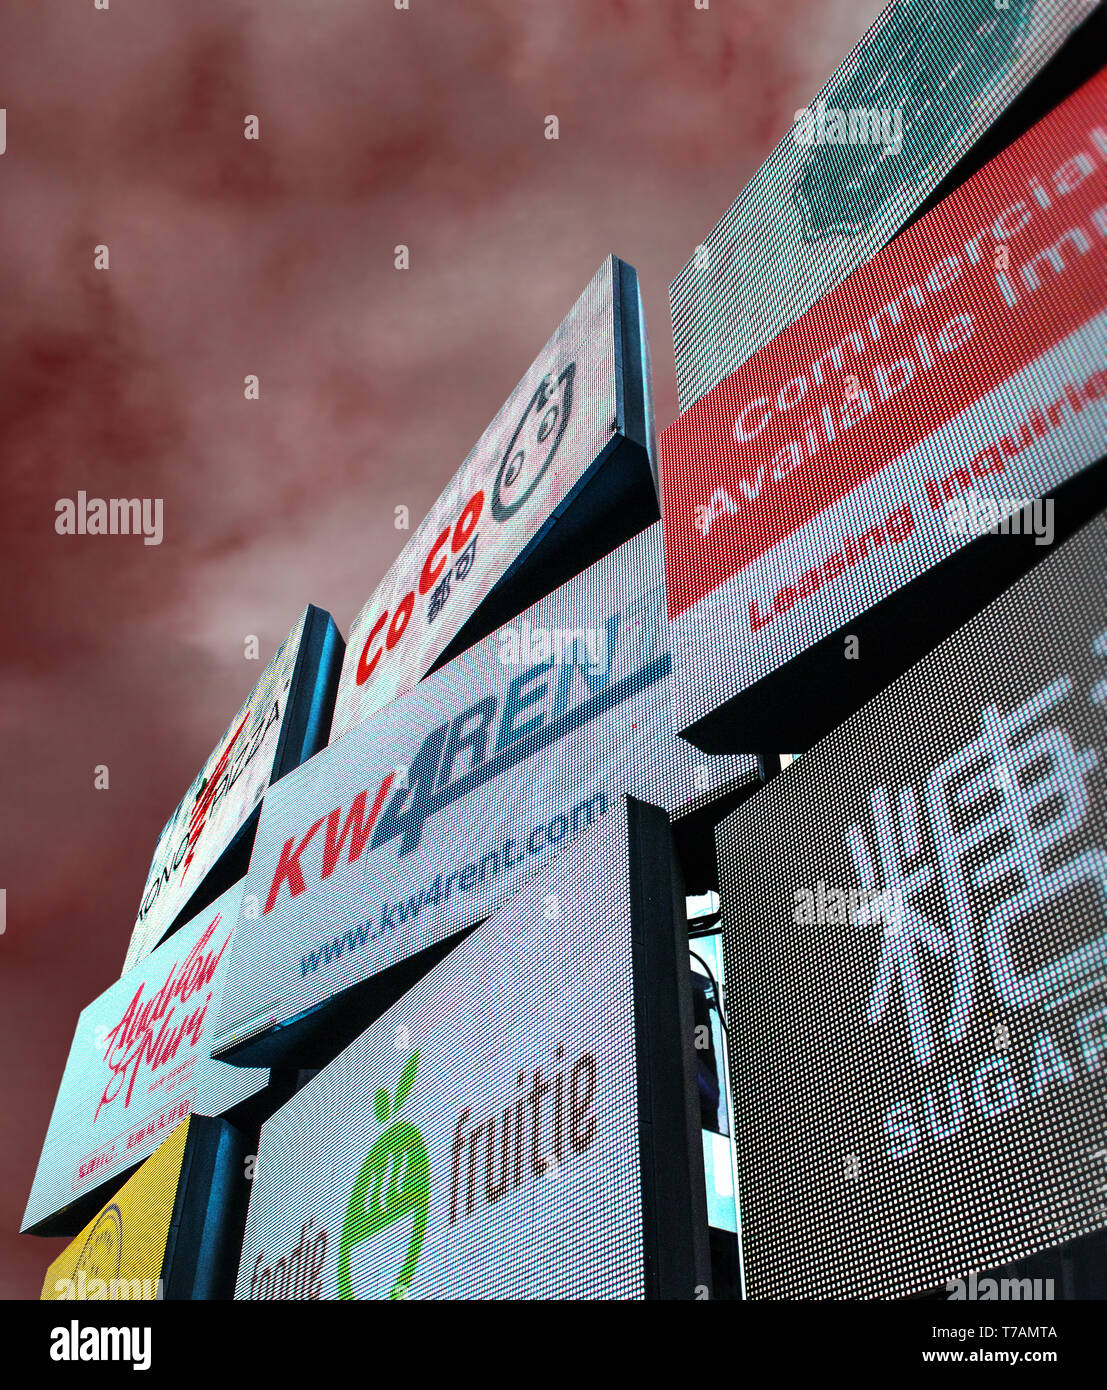 Visualizzatori elettronici al di fuori del quartiere asiatico a Waterloo. Loghi aziendali, drammatica del cielo. Foto Stock